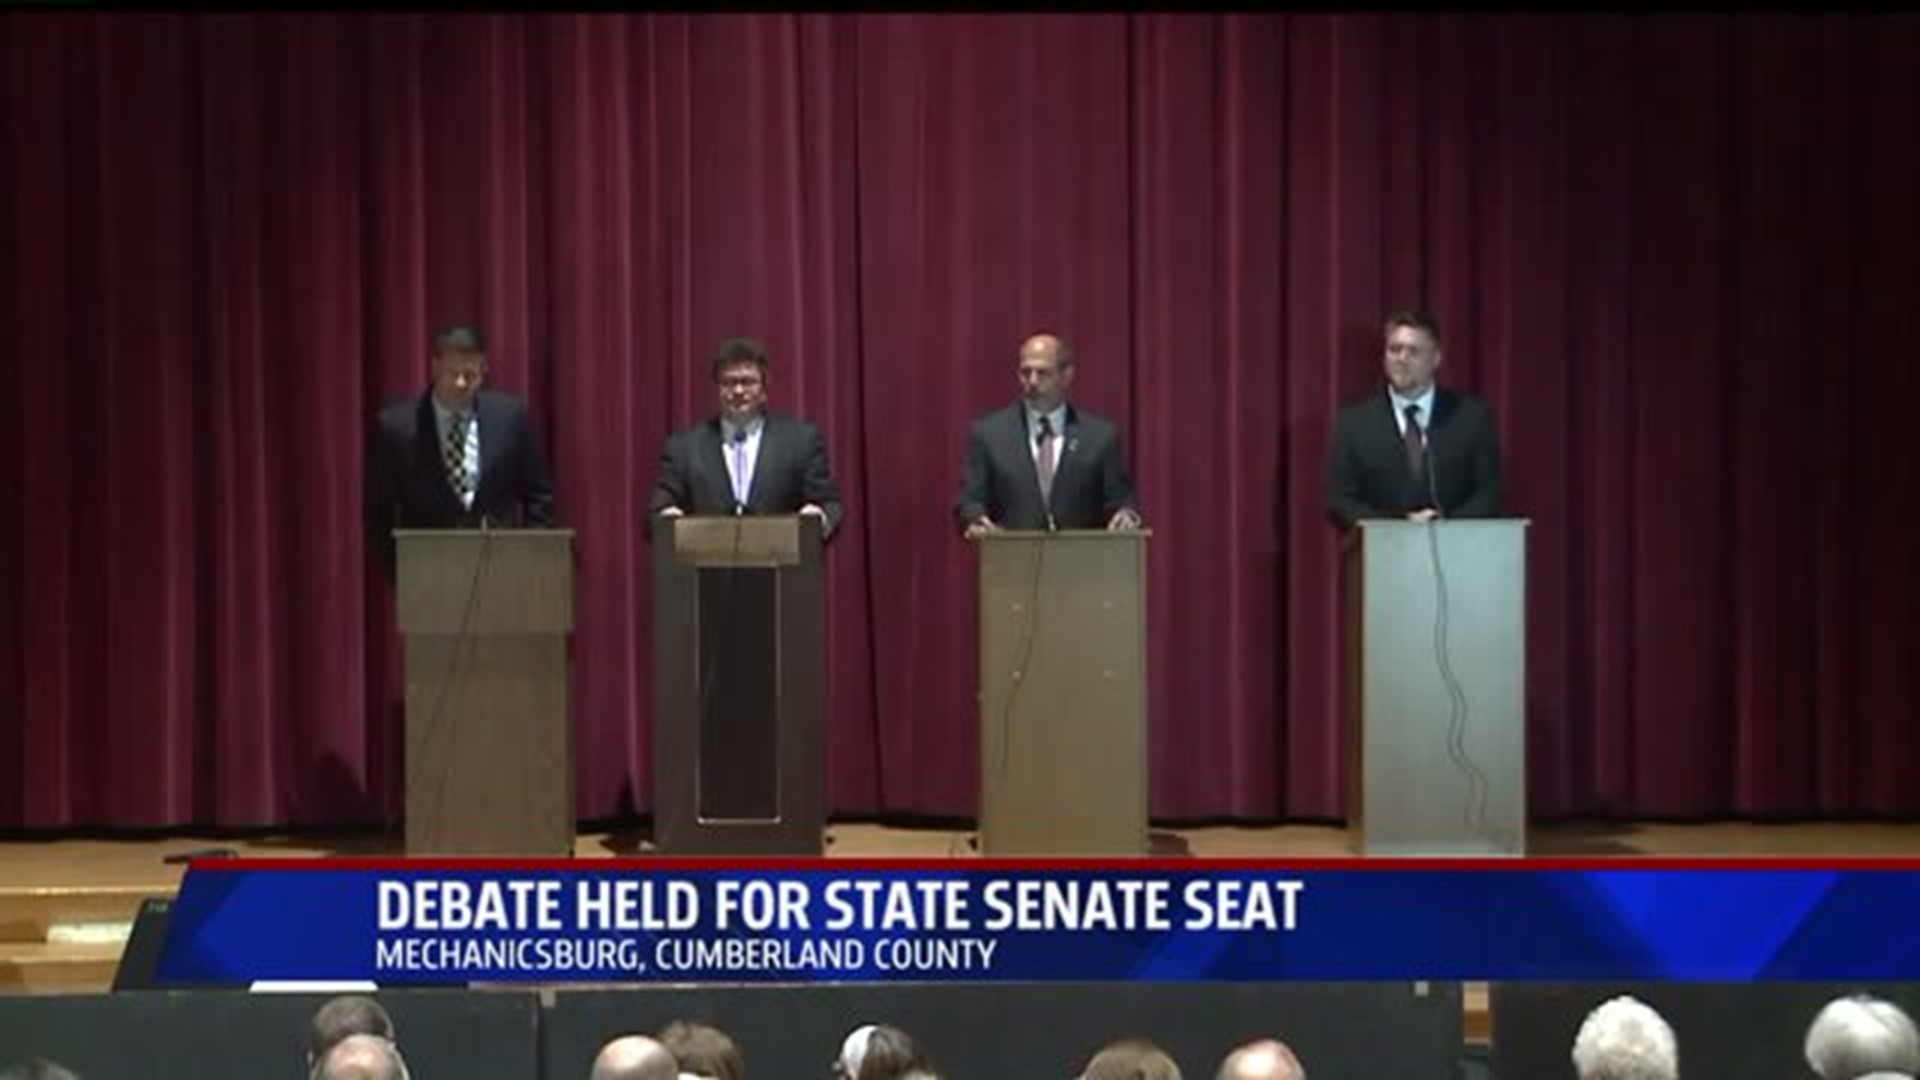 Debate held for State Senate seat